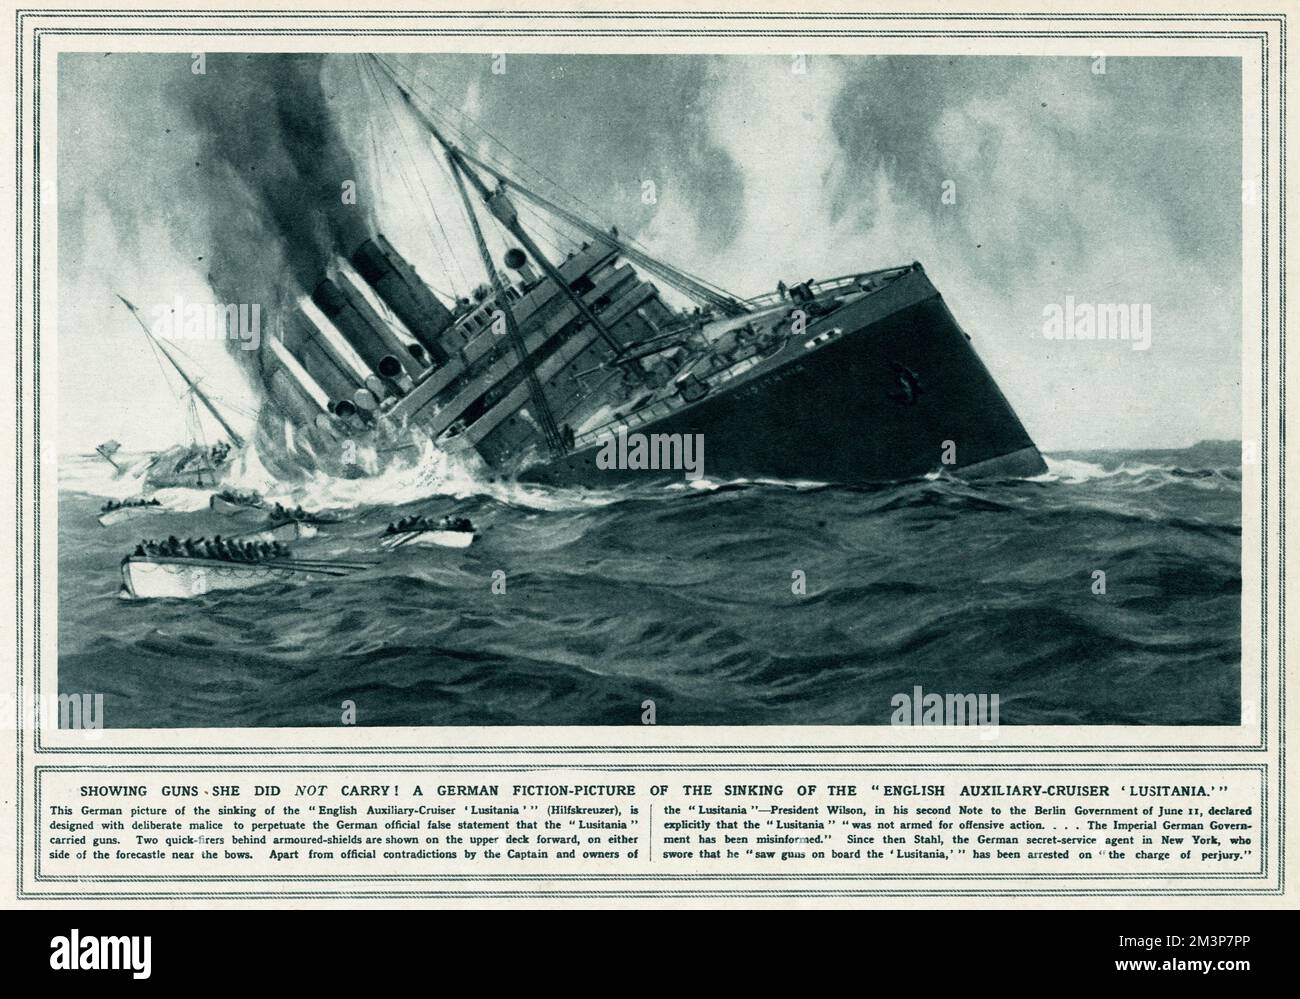 Le naufrage du paquebot Cunard RMS Lusitania a eu lieu le 7 mai 1915 pendant la première Guerre mondiale, par un U-boat allemand, frappant la Lusitania deux fois avec des torpilles, s'enfoncant dans les 18 minutes, tuant 1198 passagers. L'Allemagne a publié une fausse déclaration selon laquelle la Lusitania transportait des armes, avec deux feux rapides derrière des boucliers blindés sont montrés sur le pont supérieur vers l'avant, de chaque côté de la piste près des arcs. 7 mai 1915 Banque D'Images